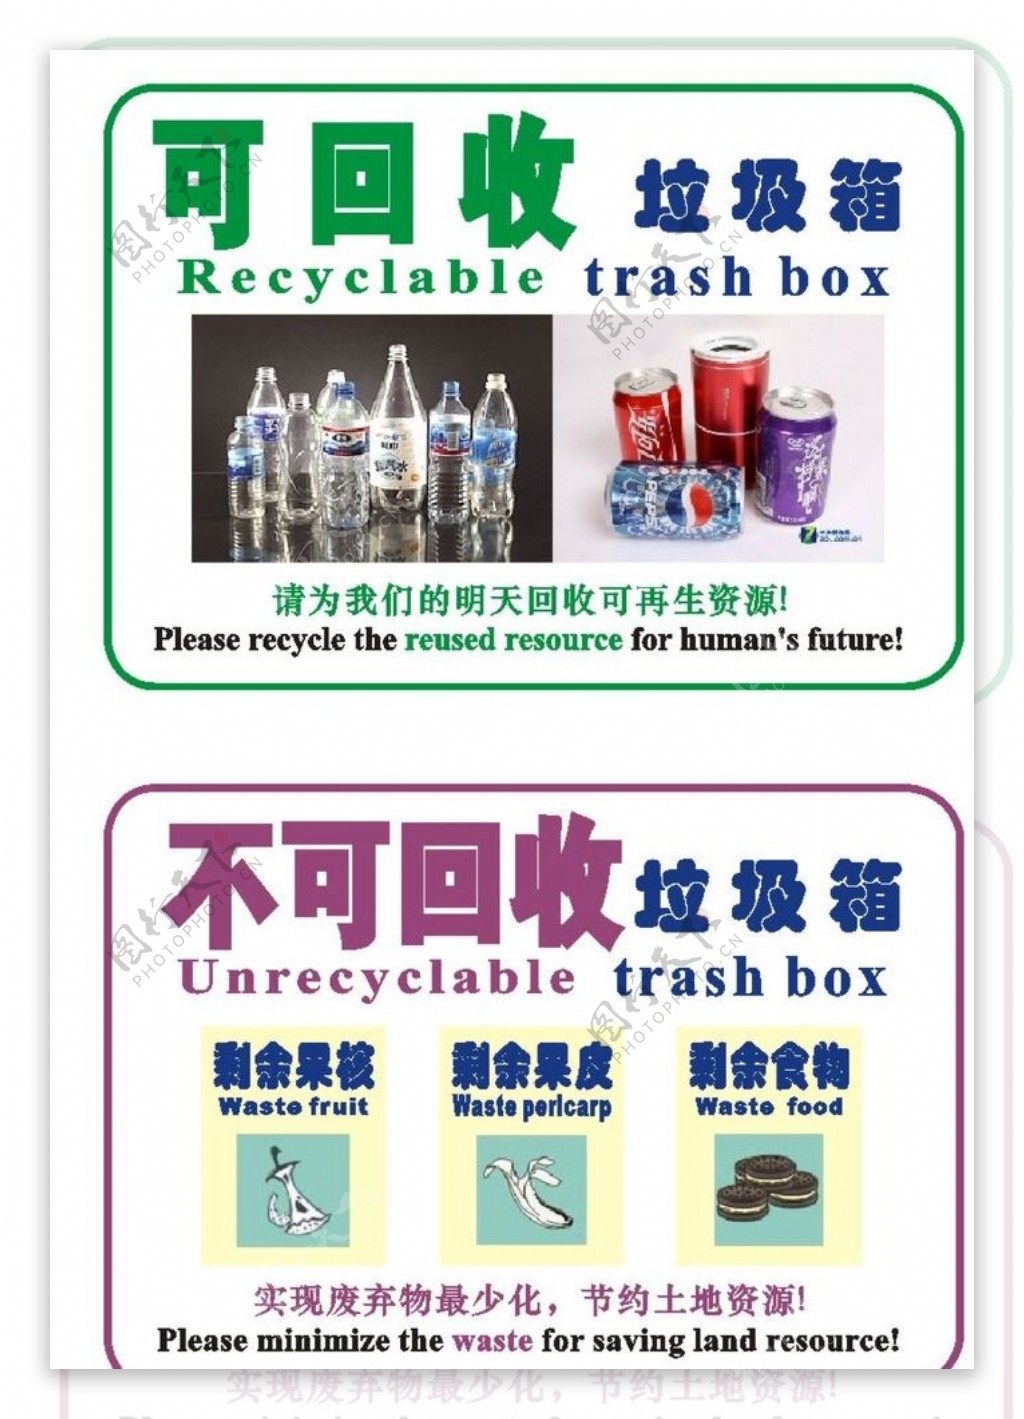 空瓶回收垃圾不可回收图片